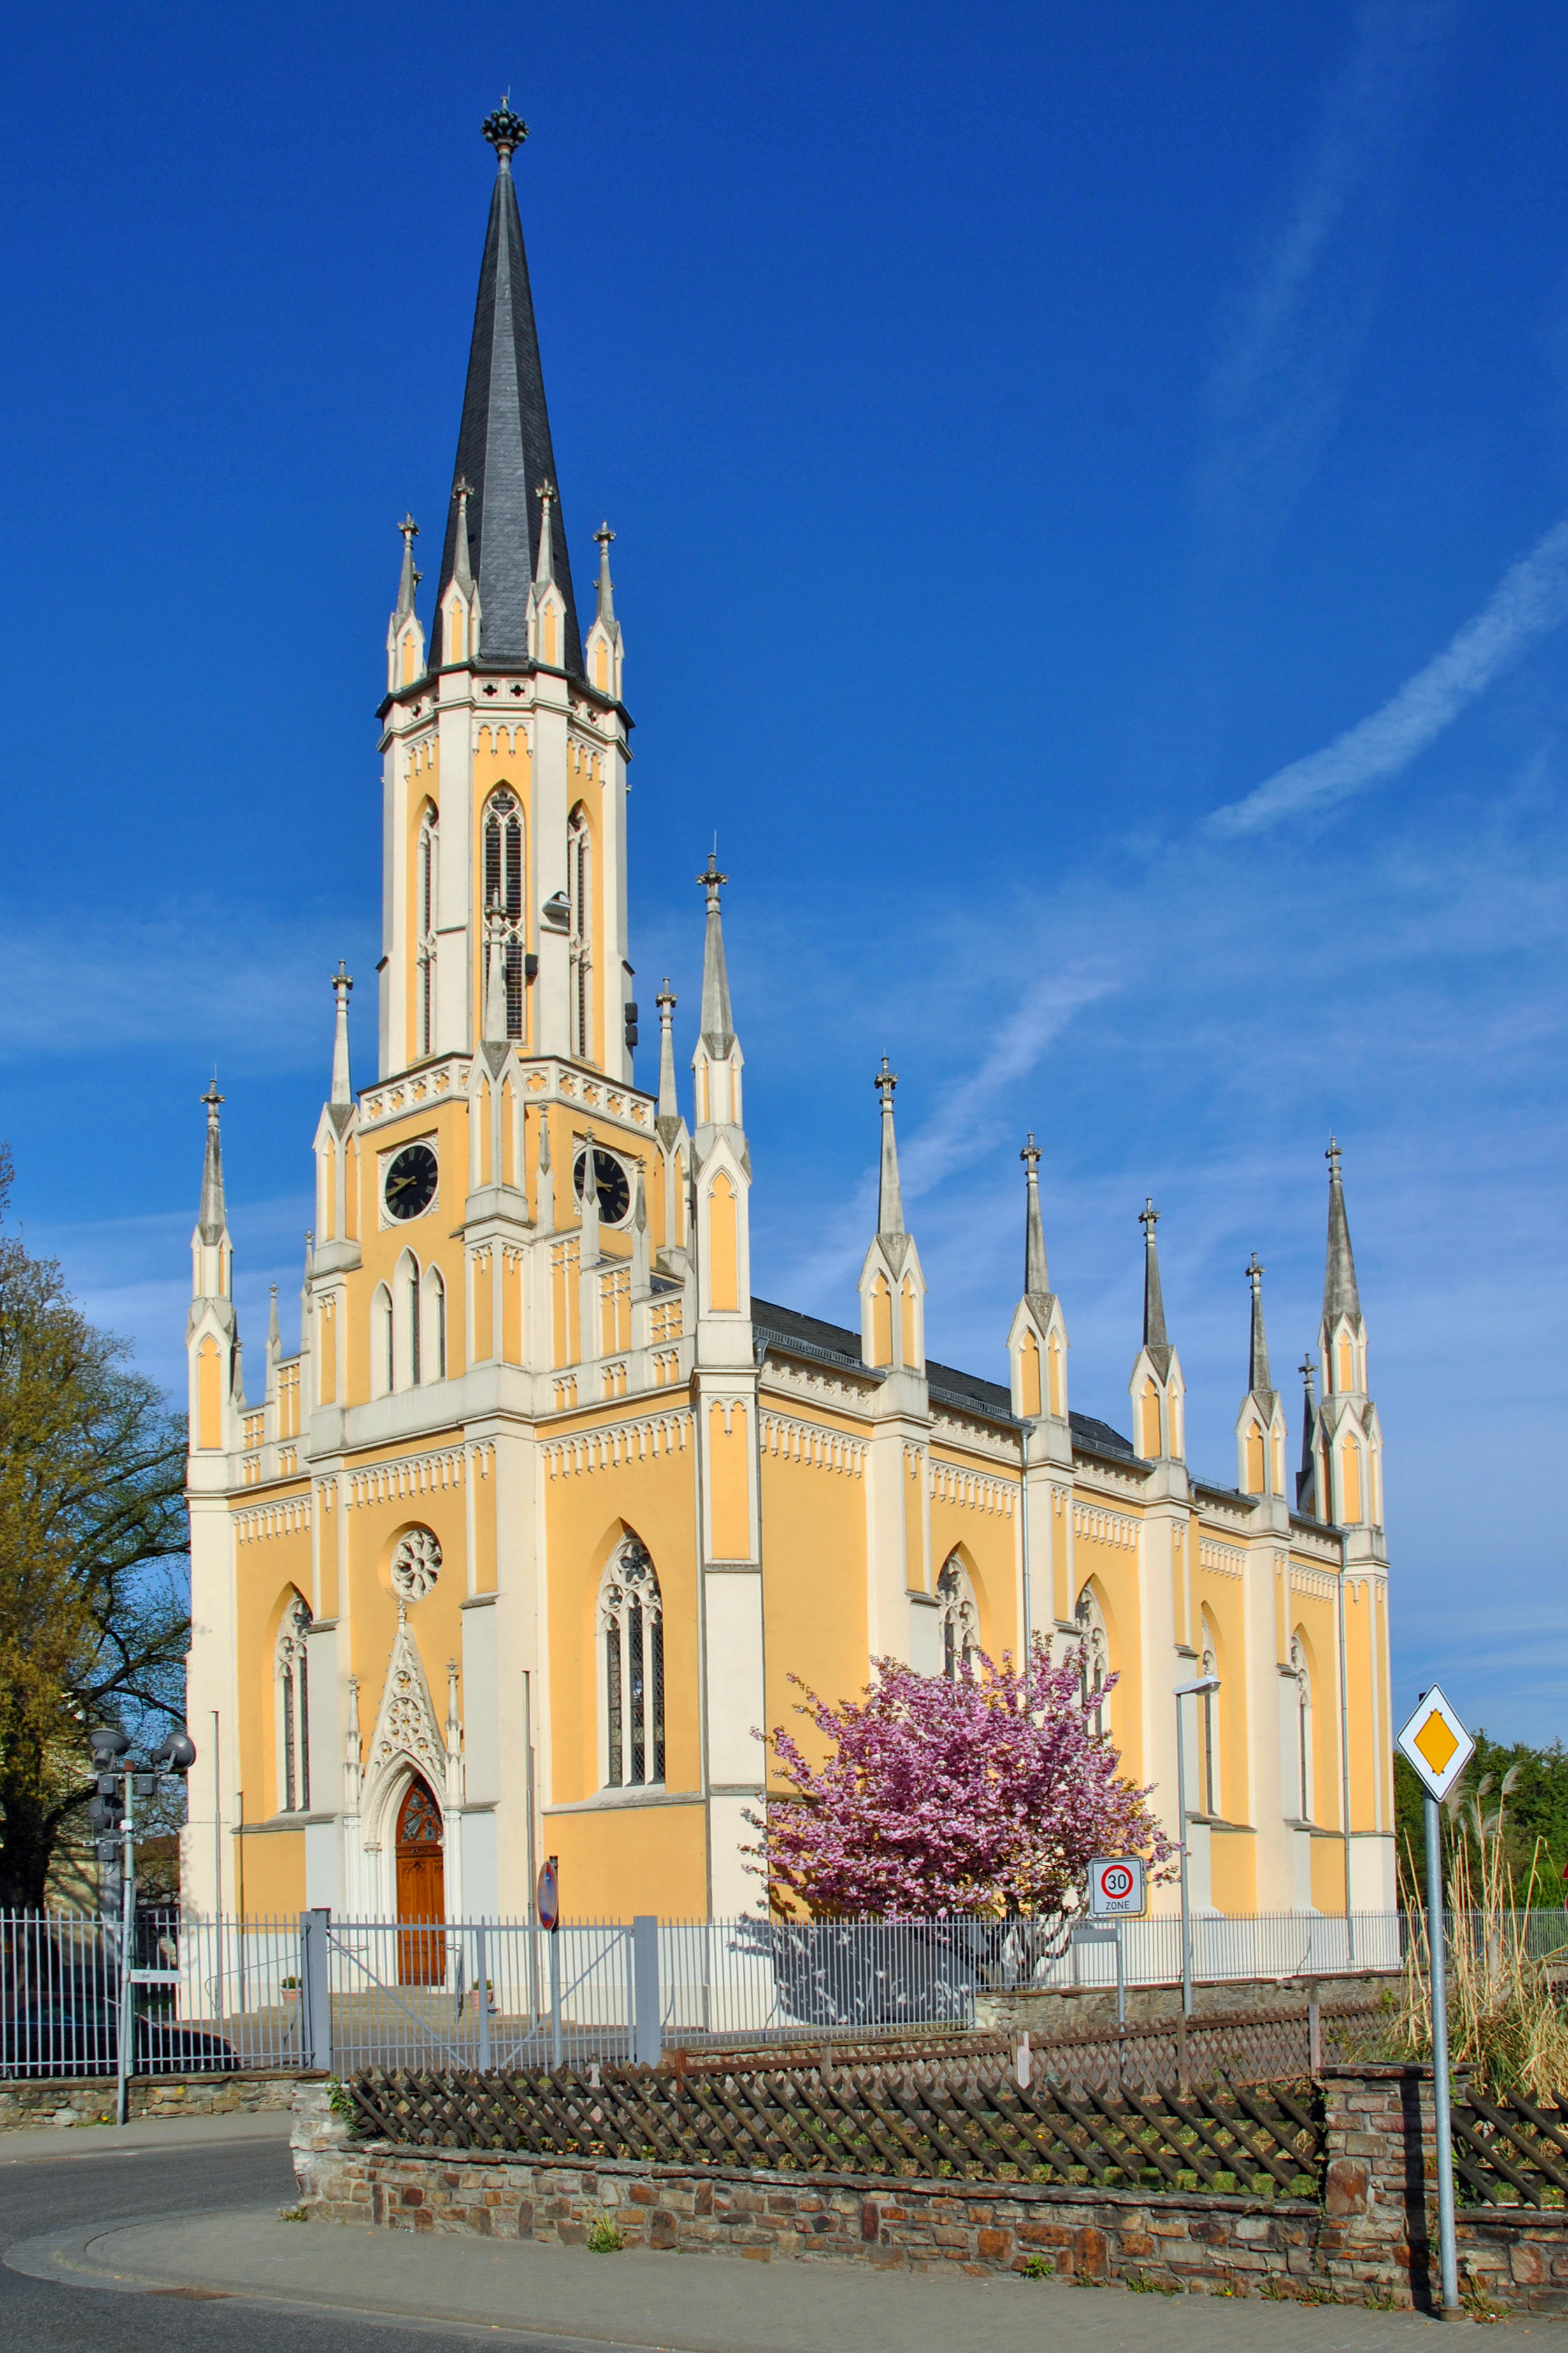 Die neugotische Johanneskirche in Erbach, erbaut unter der Leitung des Herzoglich Nassauischen Baumeisters Eduard Zeiss, ist die erste evangelische Kirche in oberen Rheingau und verdankt sich einer Stiftung der Prinzessin der Niederlande, Marianne von Pre